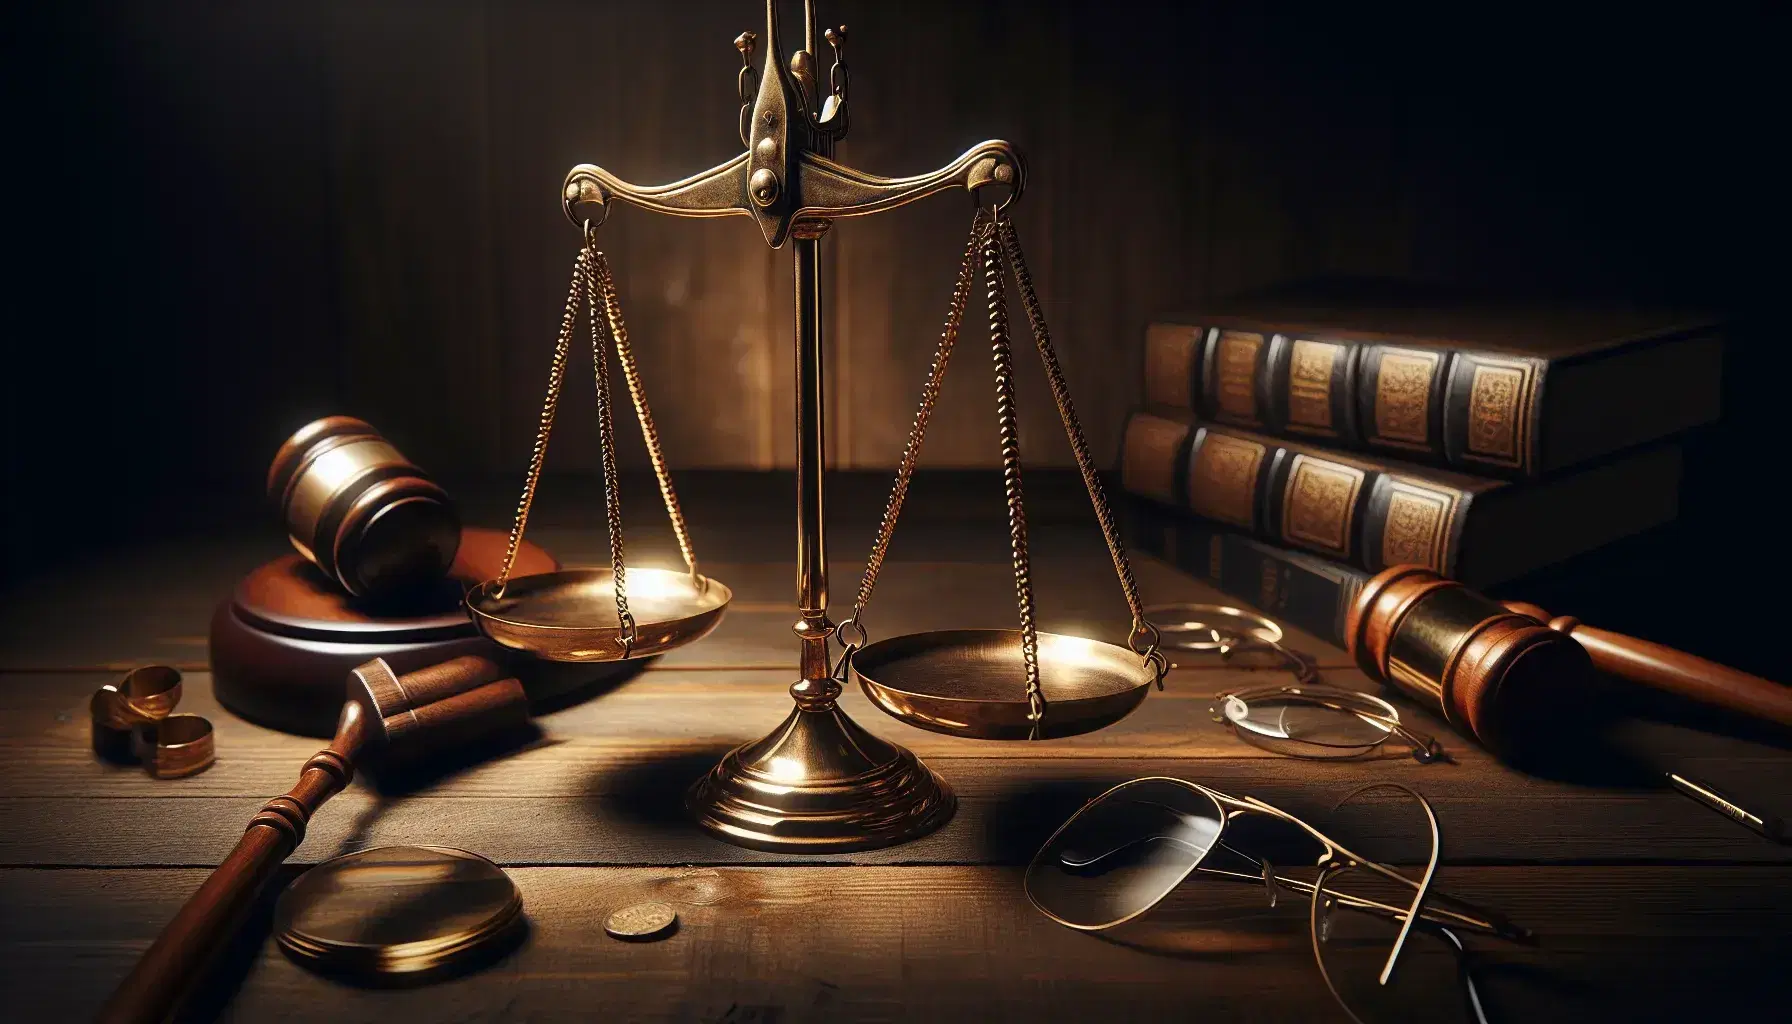 Balanza de la justicia equilibrada sobre mesa de madera oscura con mazo, gafas y libros encuadernados en cuero, simbolizando la equidad legal.